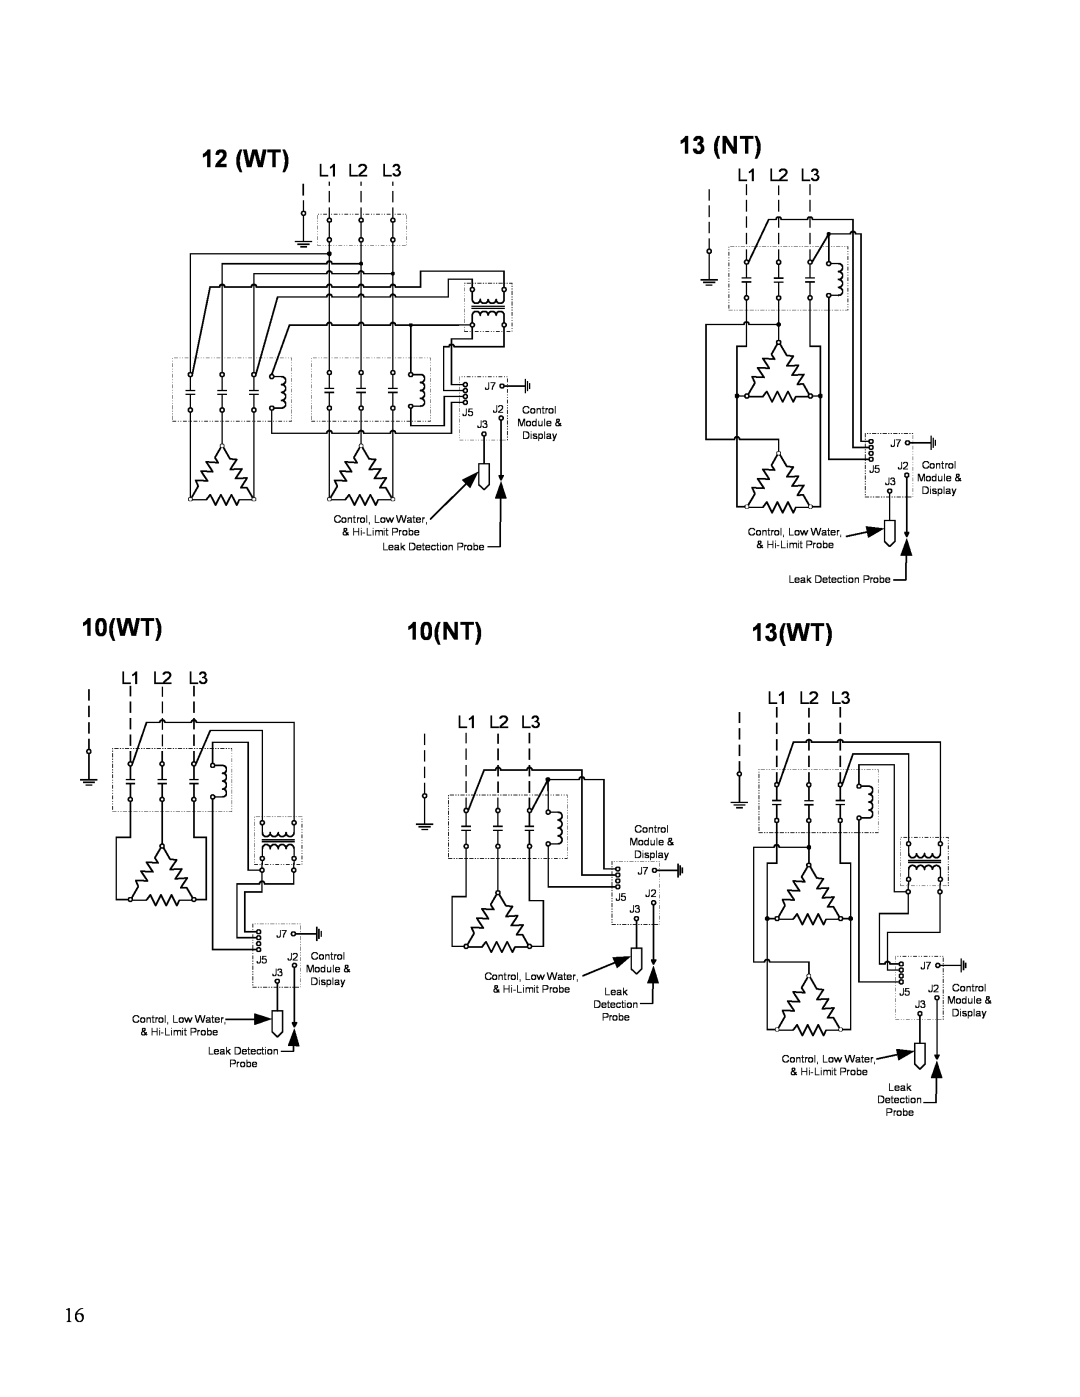 Hubbell Electric Heater Company J manual WT L1 L2 L3, 13 NT, 10WT10NT, 13WT, L1 L2 L3 L1 L2 L3 